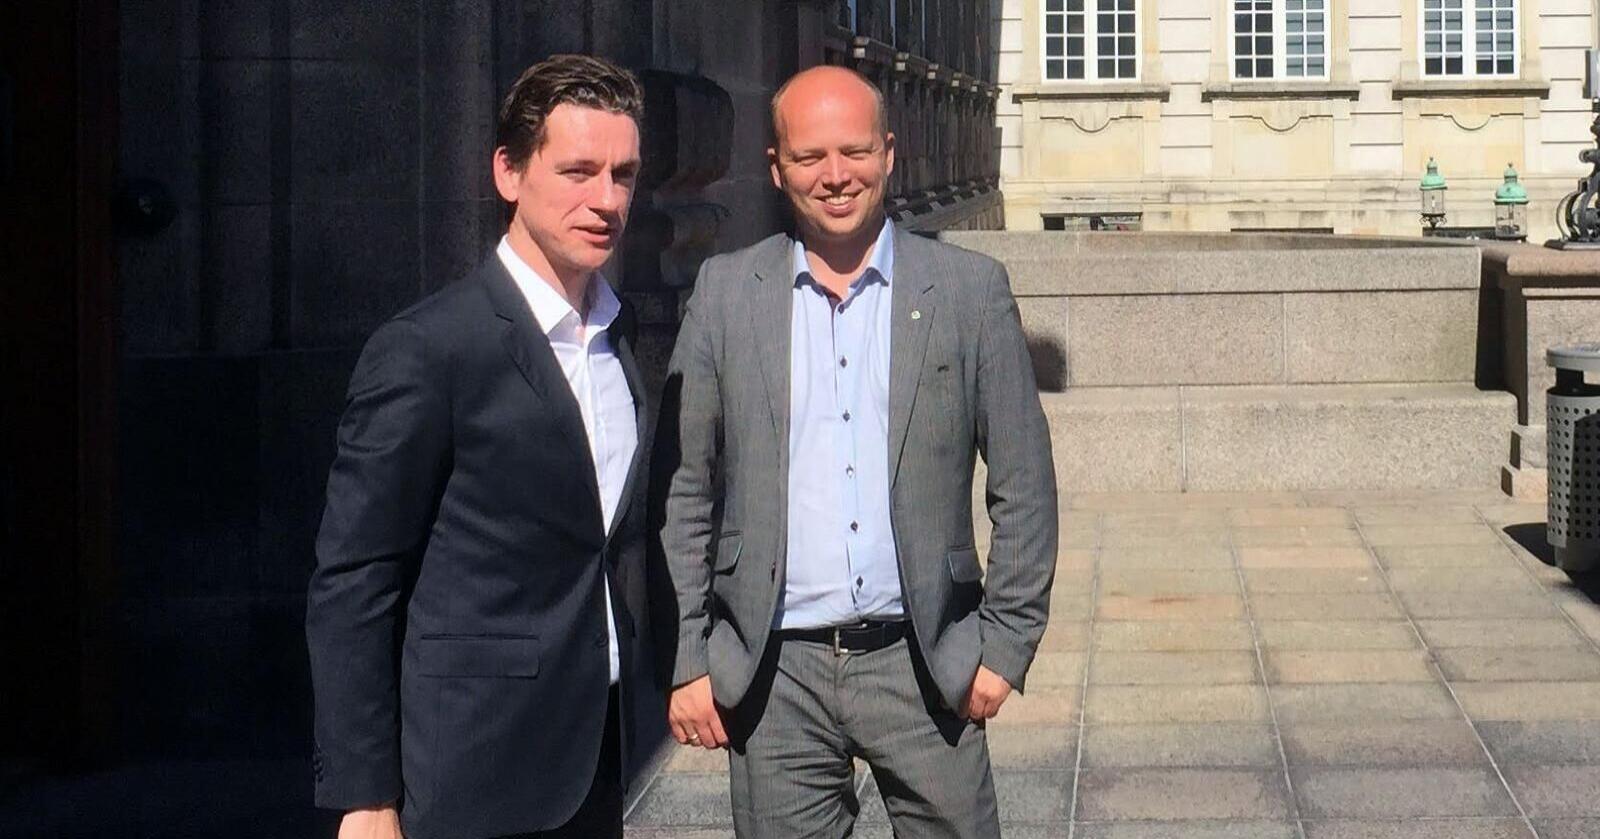 Innenriksministeren i Danmark, Kaare Dybvad Bek, sammen med Sp-leder Trygve Slagsvold Vedum foran Folketinget i København i 2015. Foto: Ole Gustav Narud.